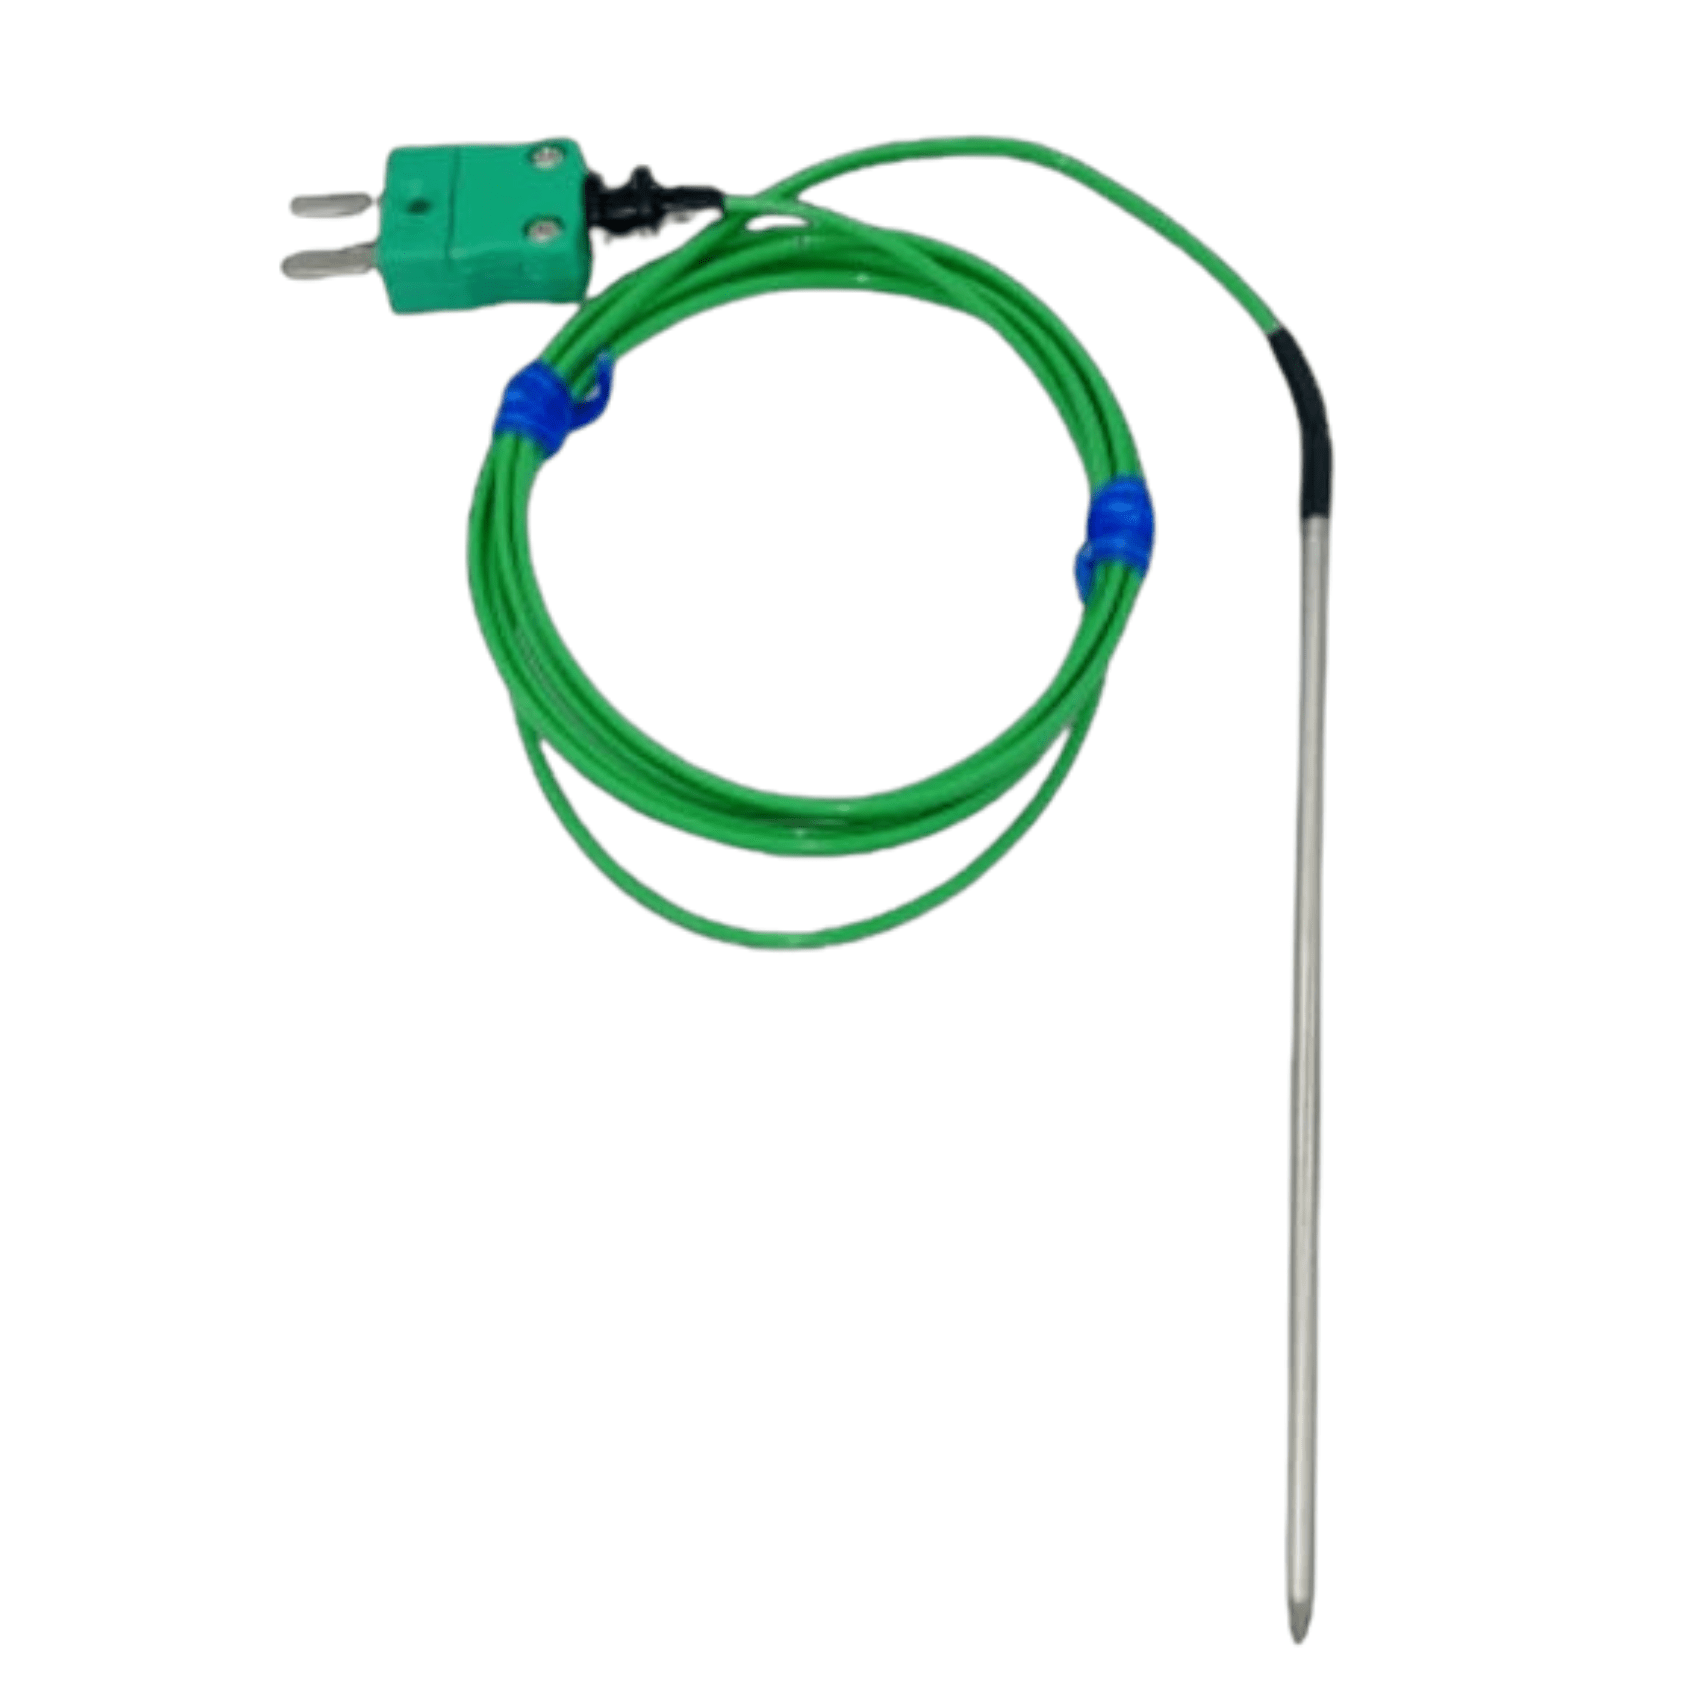 Une Sonde de pénétration à usage général verte avec un fil attaché, conçue à des fins de pénétration par Thermomètre.fr.